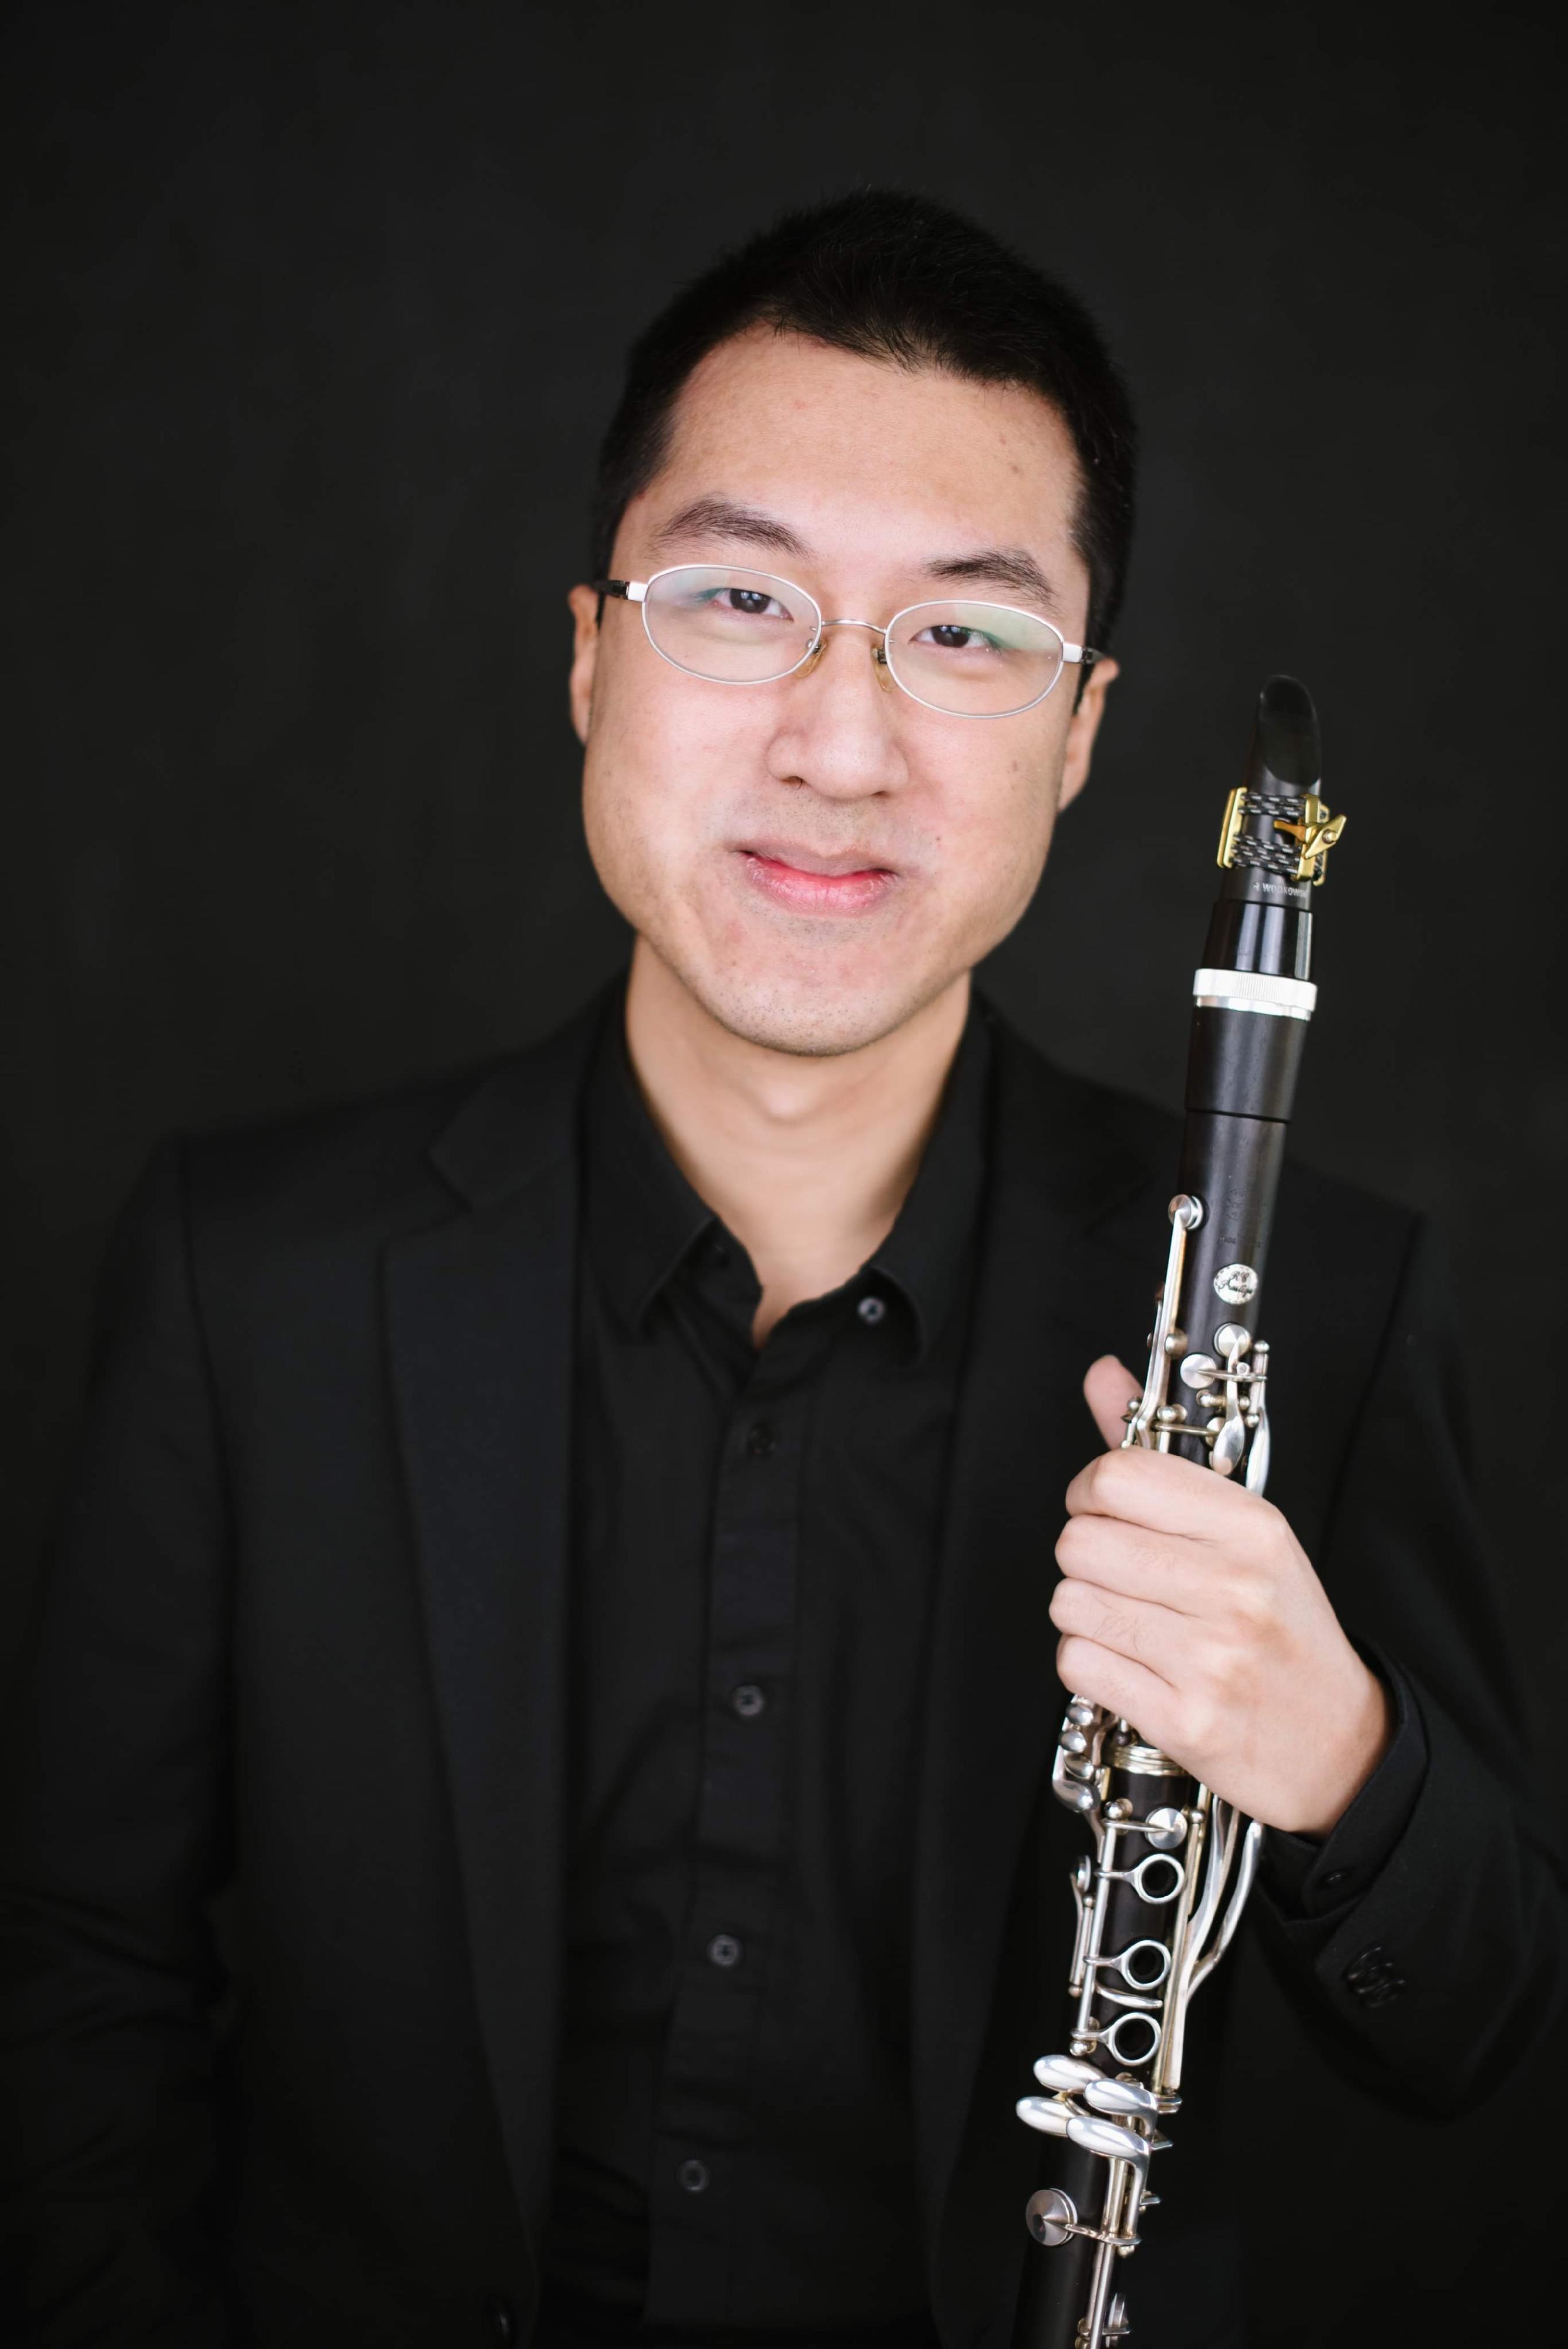 康樂及文化事務署十月初呈獻《古典•今作》演奏會。圖為單簧管演奏家溫偉圻。